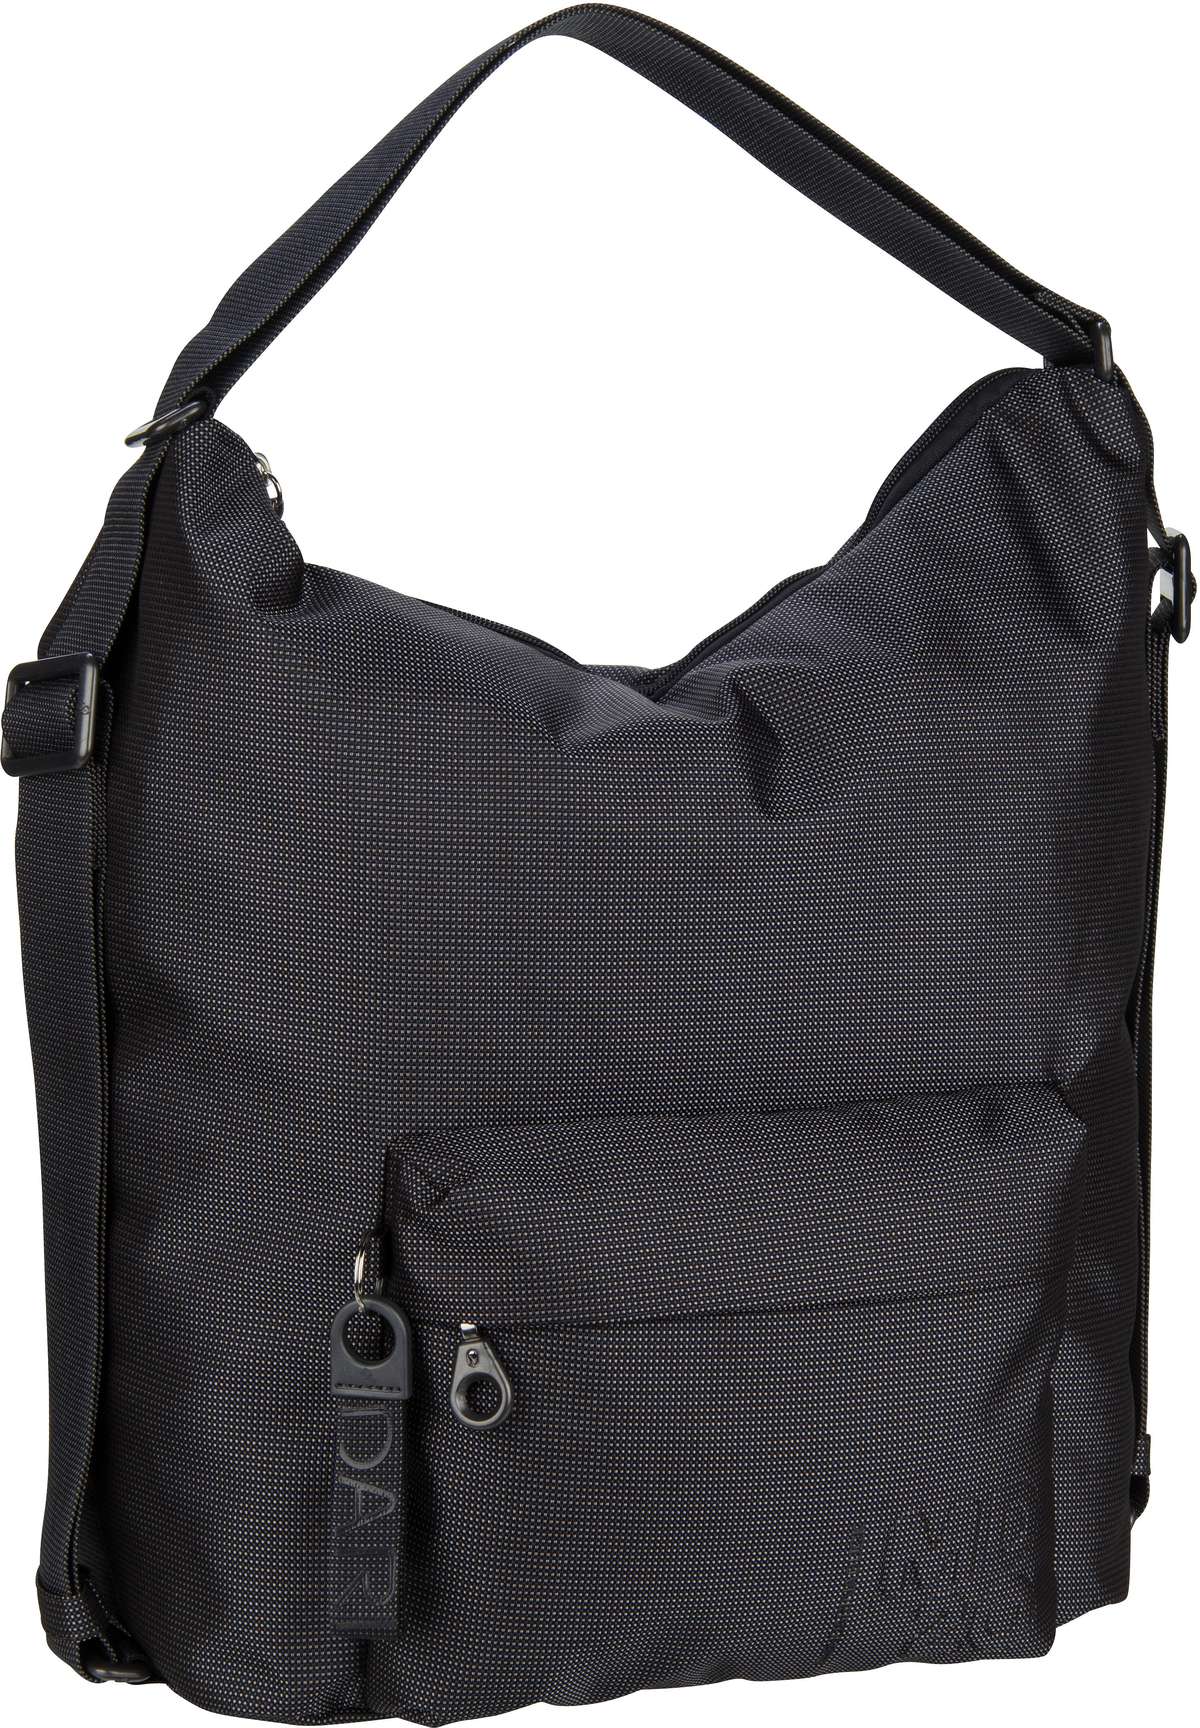 Mandarina Duck MD20 Hobo Backpack QMT09  in Grau (16.3 Liter), Rucksack / Backpack